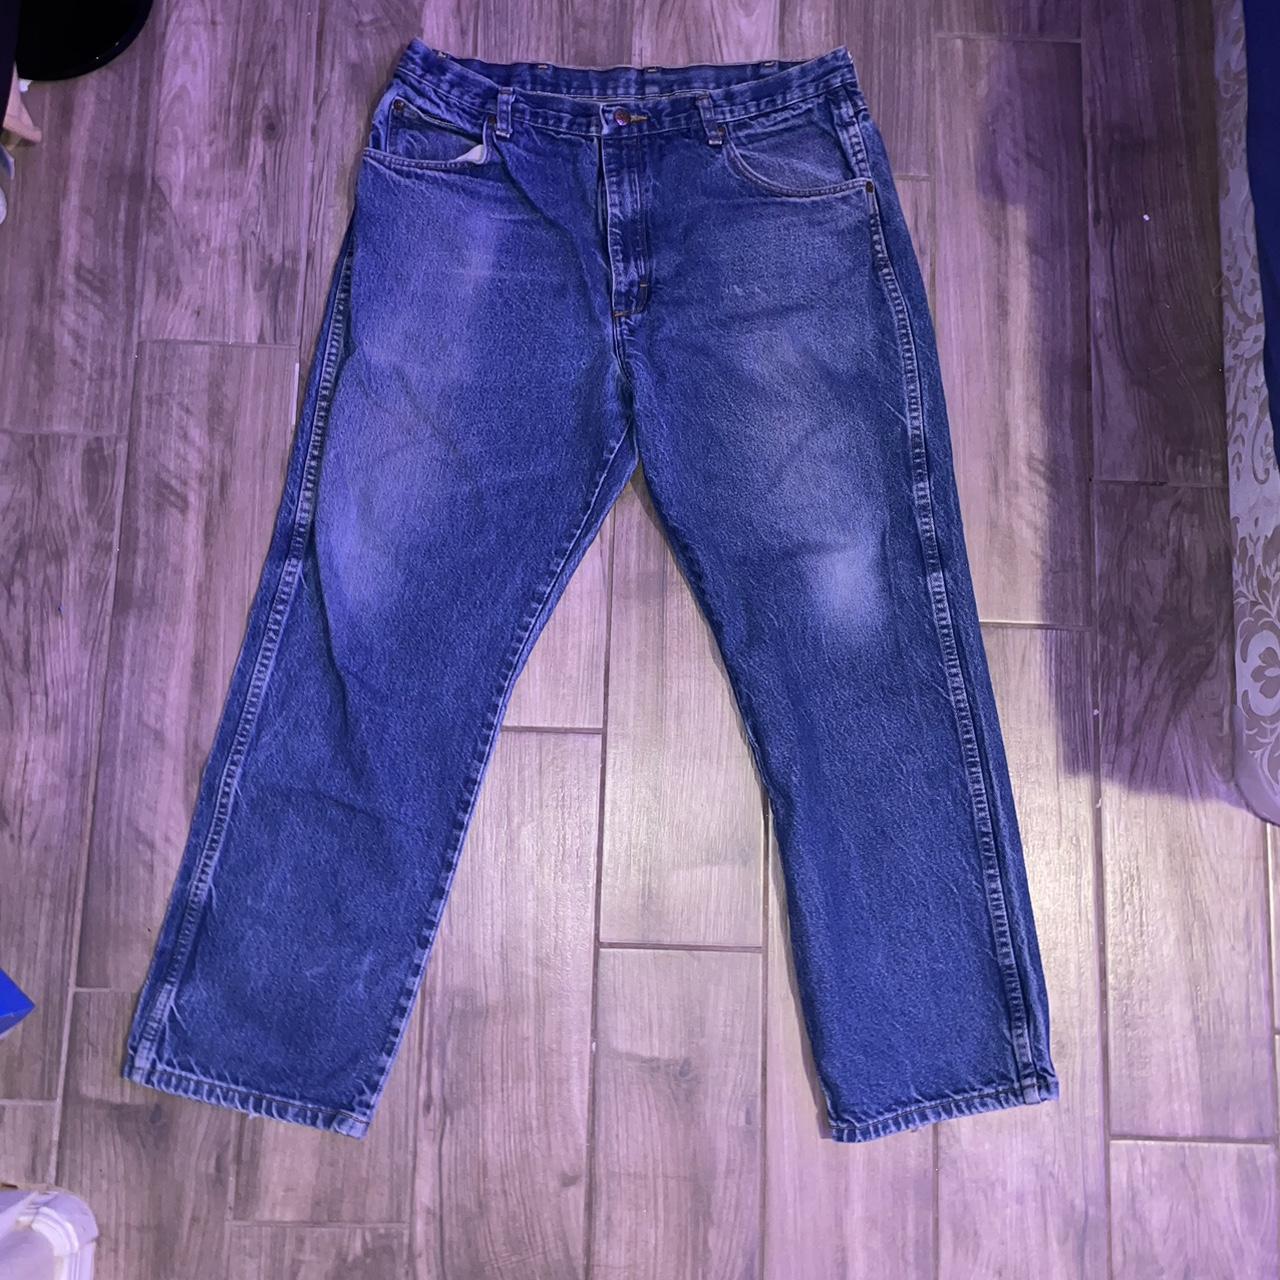 Red Kap blue jeans - Depop